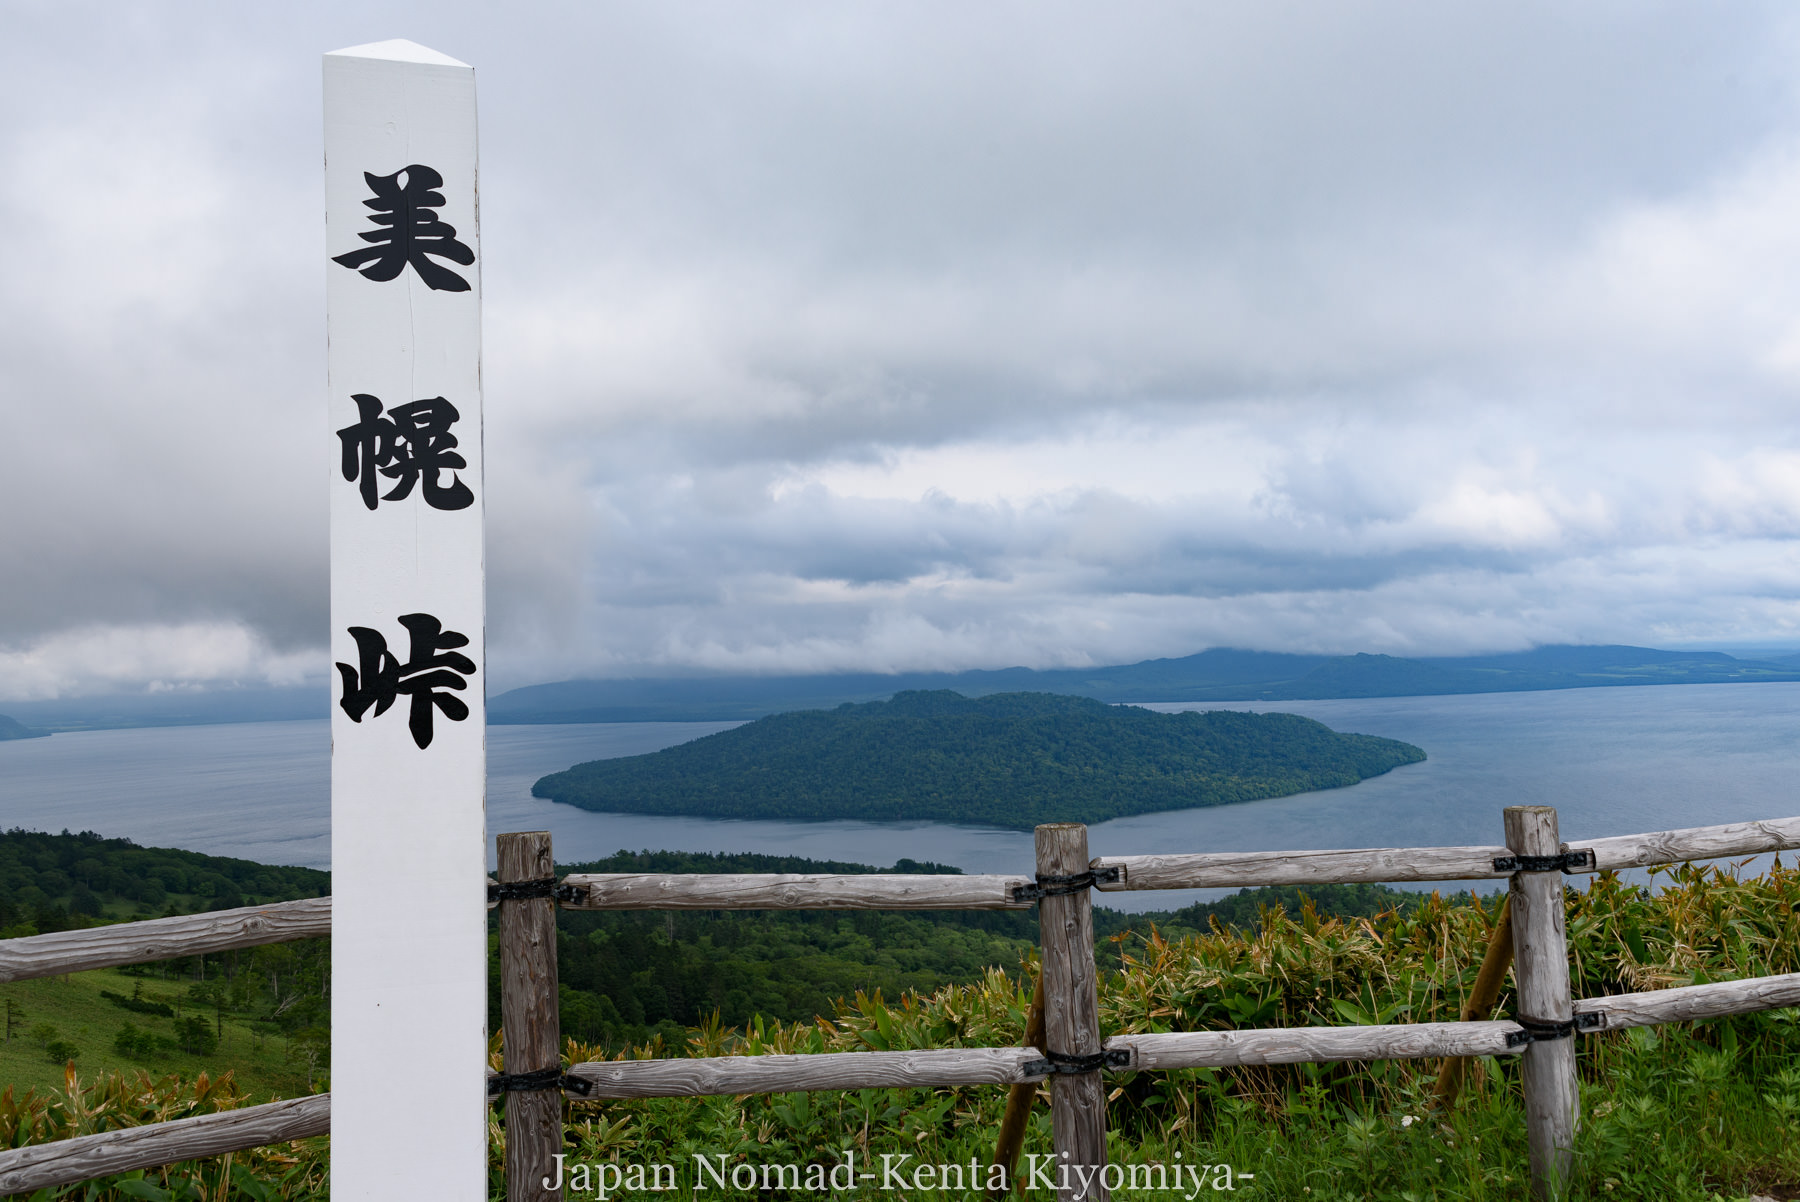 旅96日目 霧の中から大逆転 美幌峠から見下ろす絶景 Japan Nomad